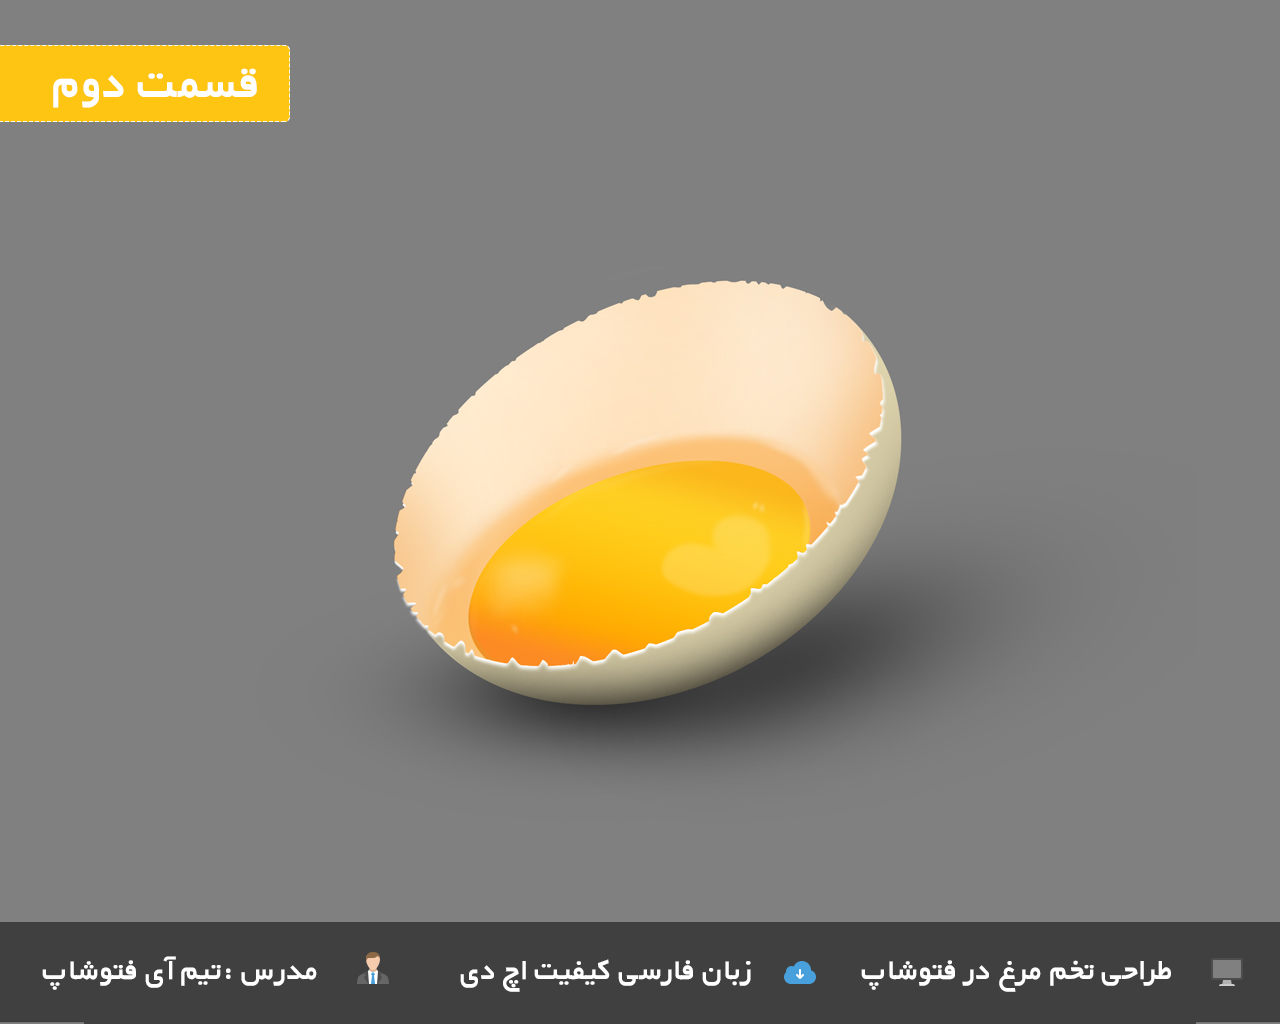 تخم مرغ شکسته در فتوشاپ 2